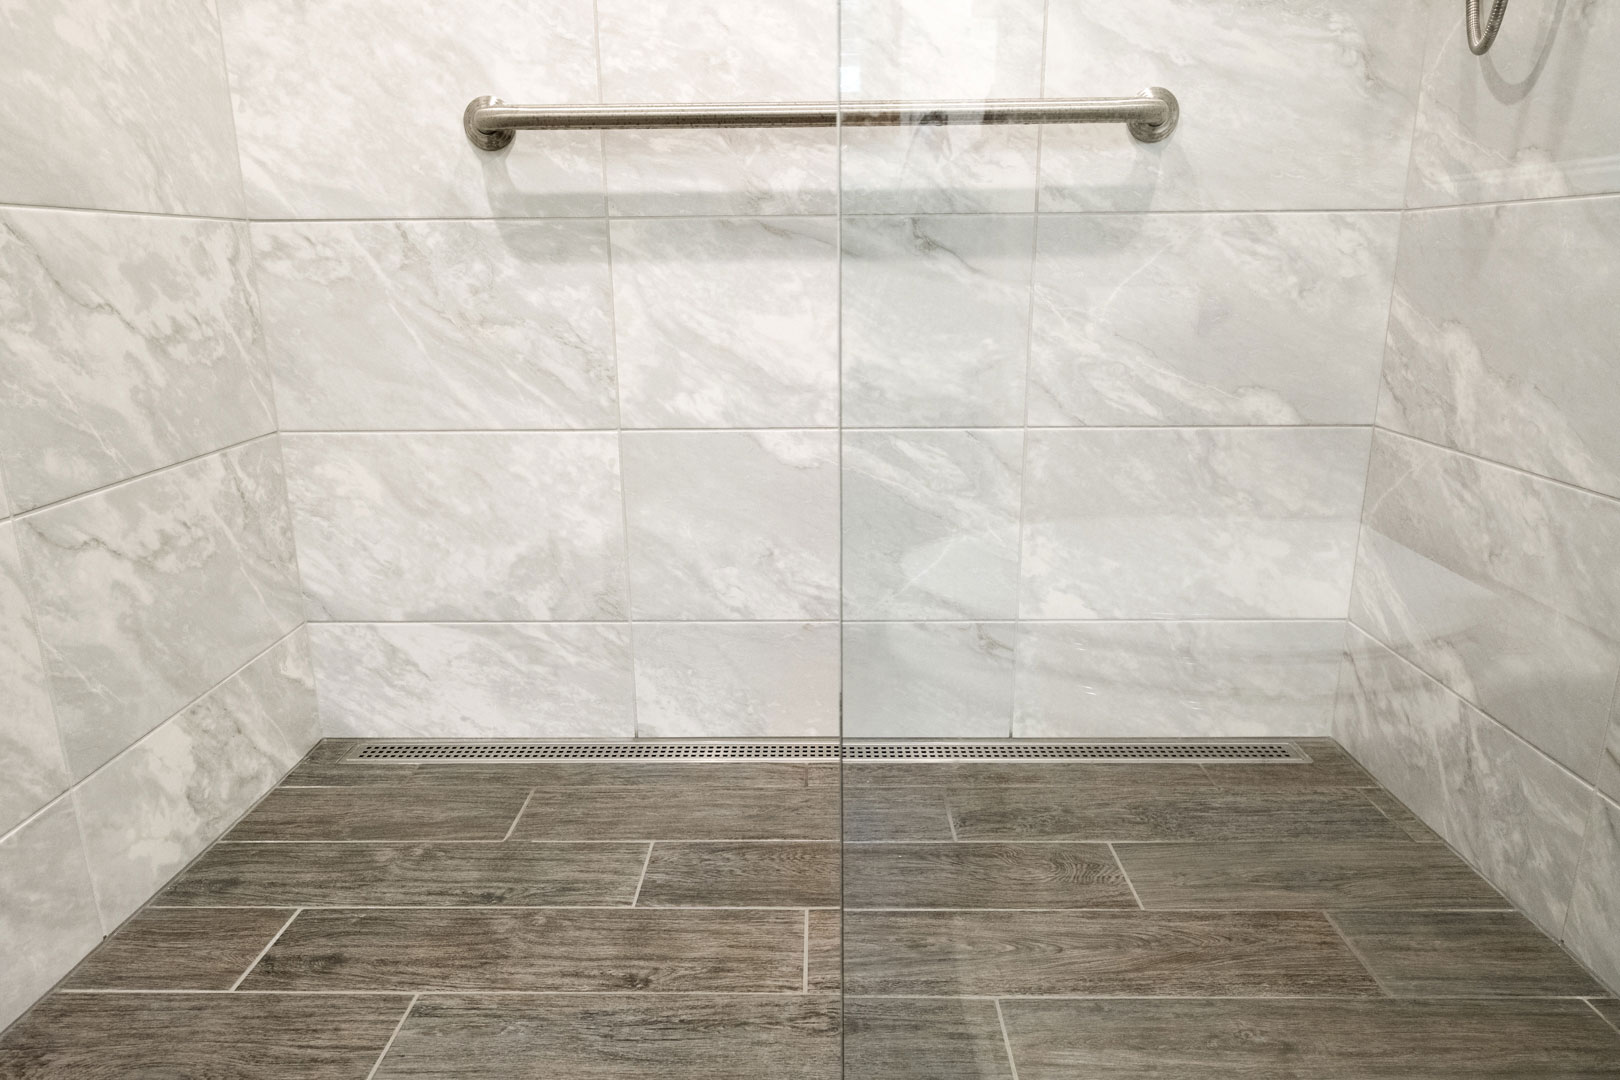 bathroom remodel and design - Henderer Design + Build, Corvallis OR